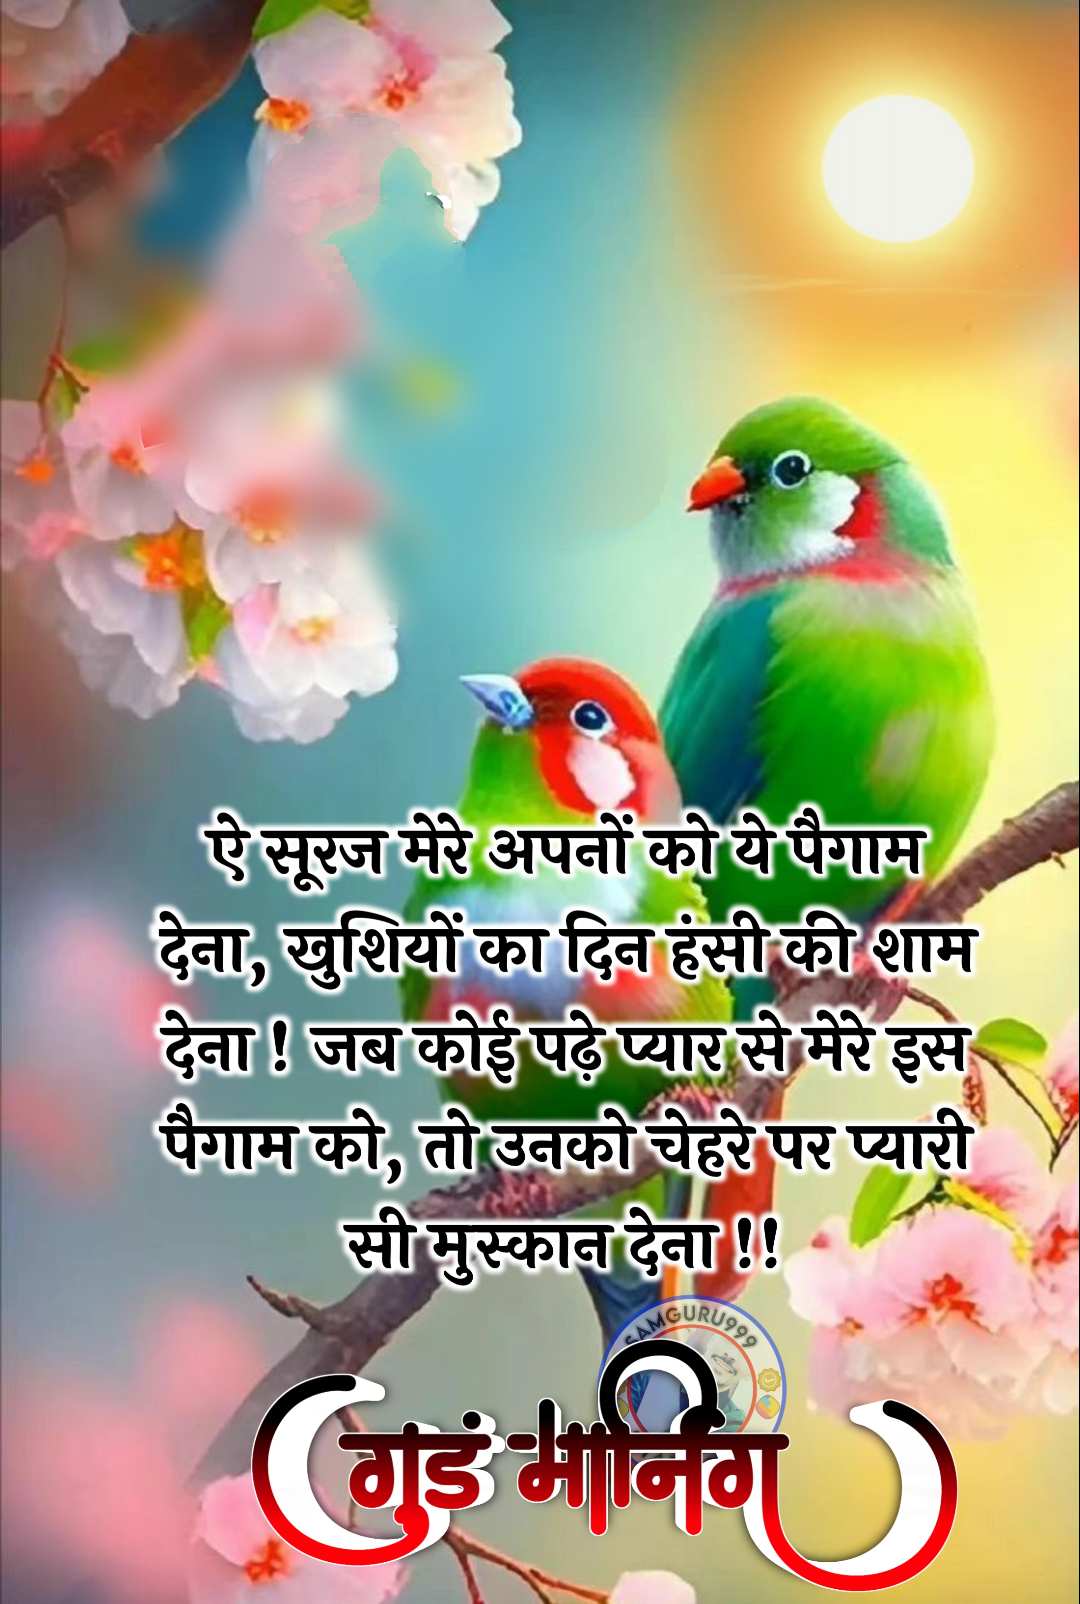 Good Morning Images Hindi WhatsApp ()